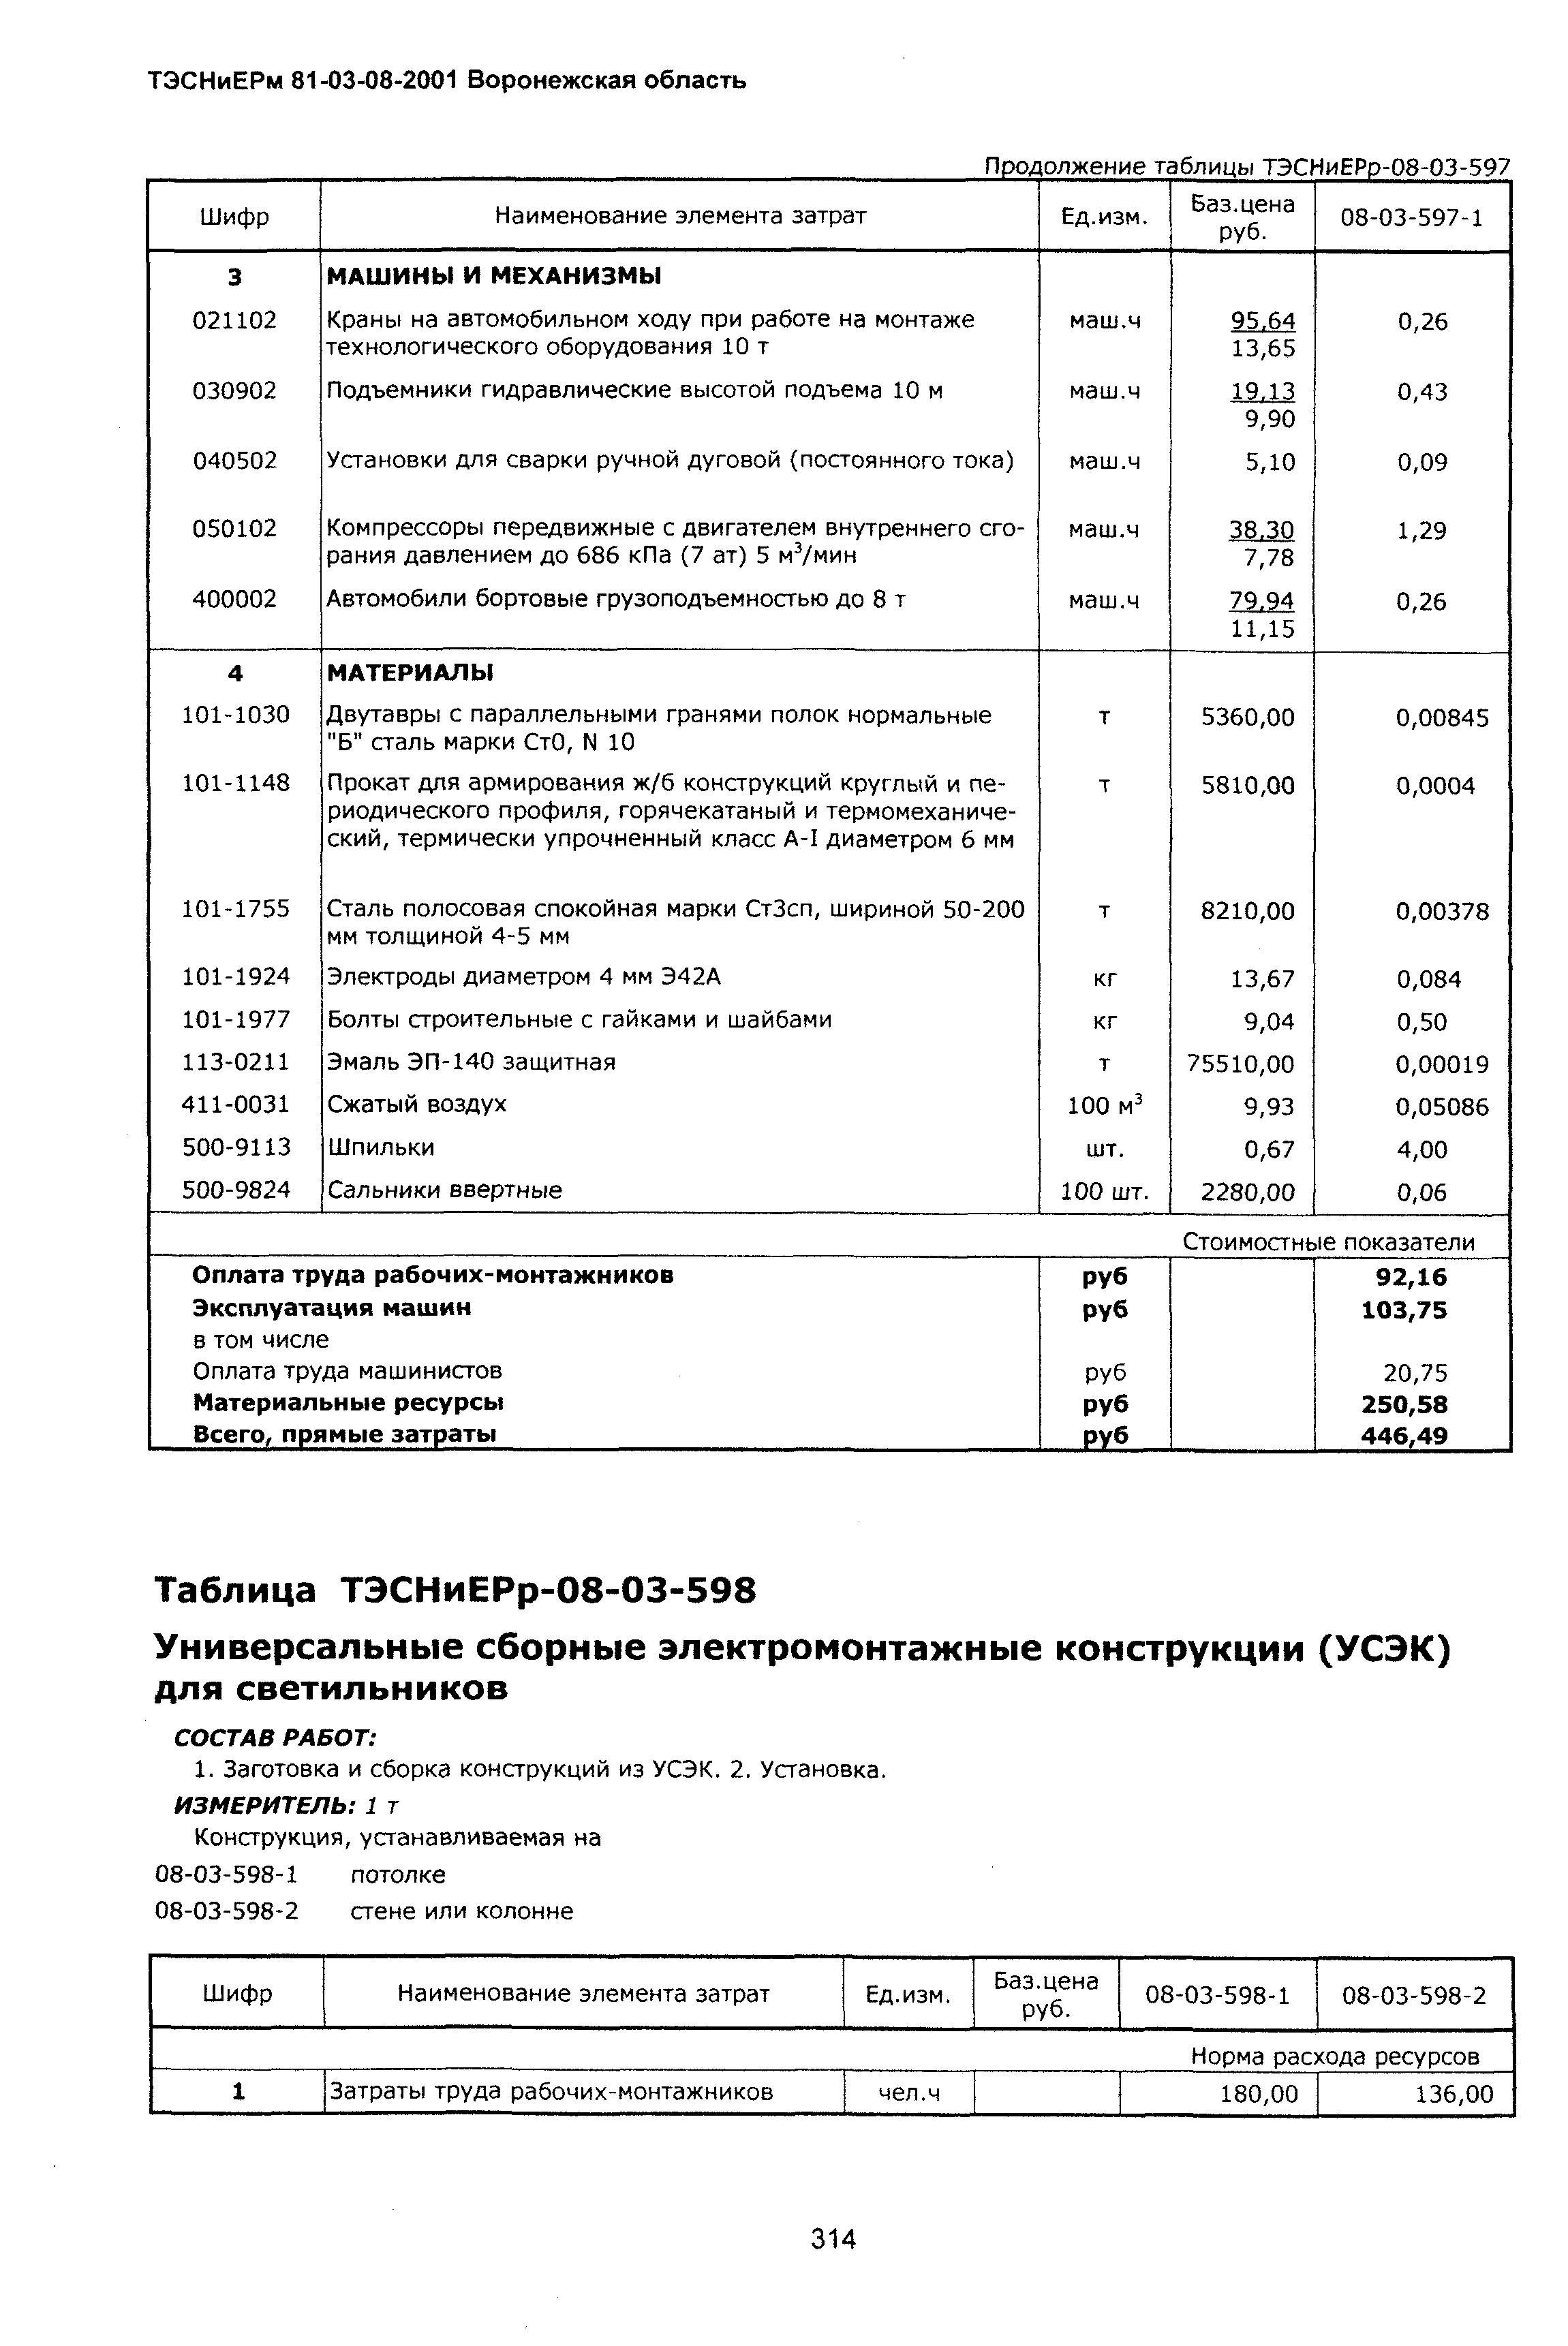 ТЭСНиЕРм Воронежская область 81-03-08-2001